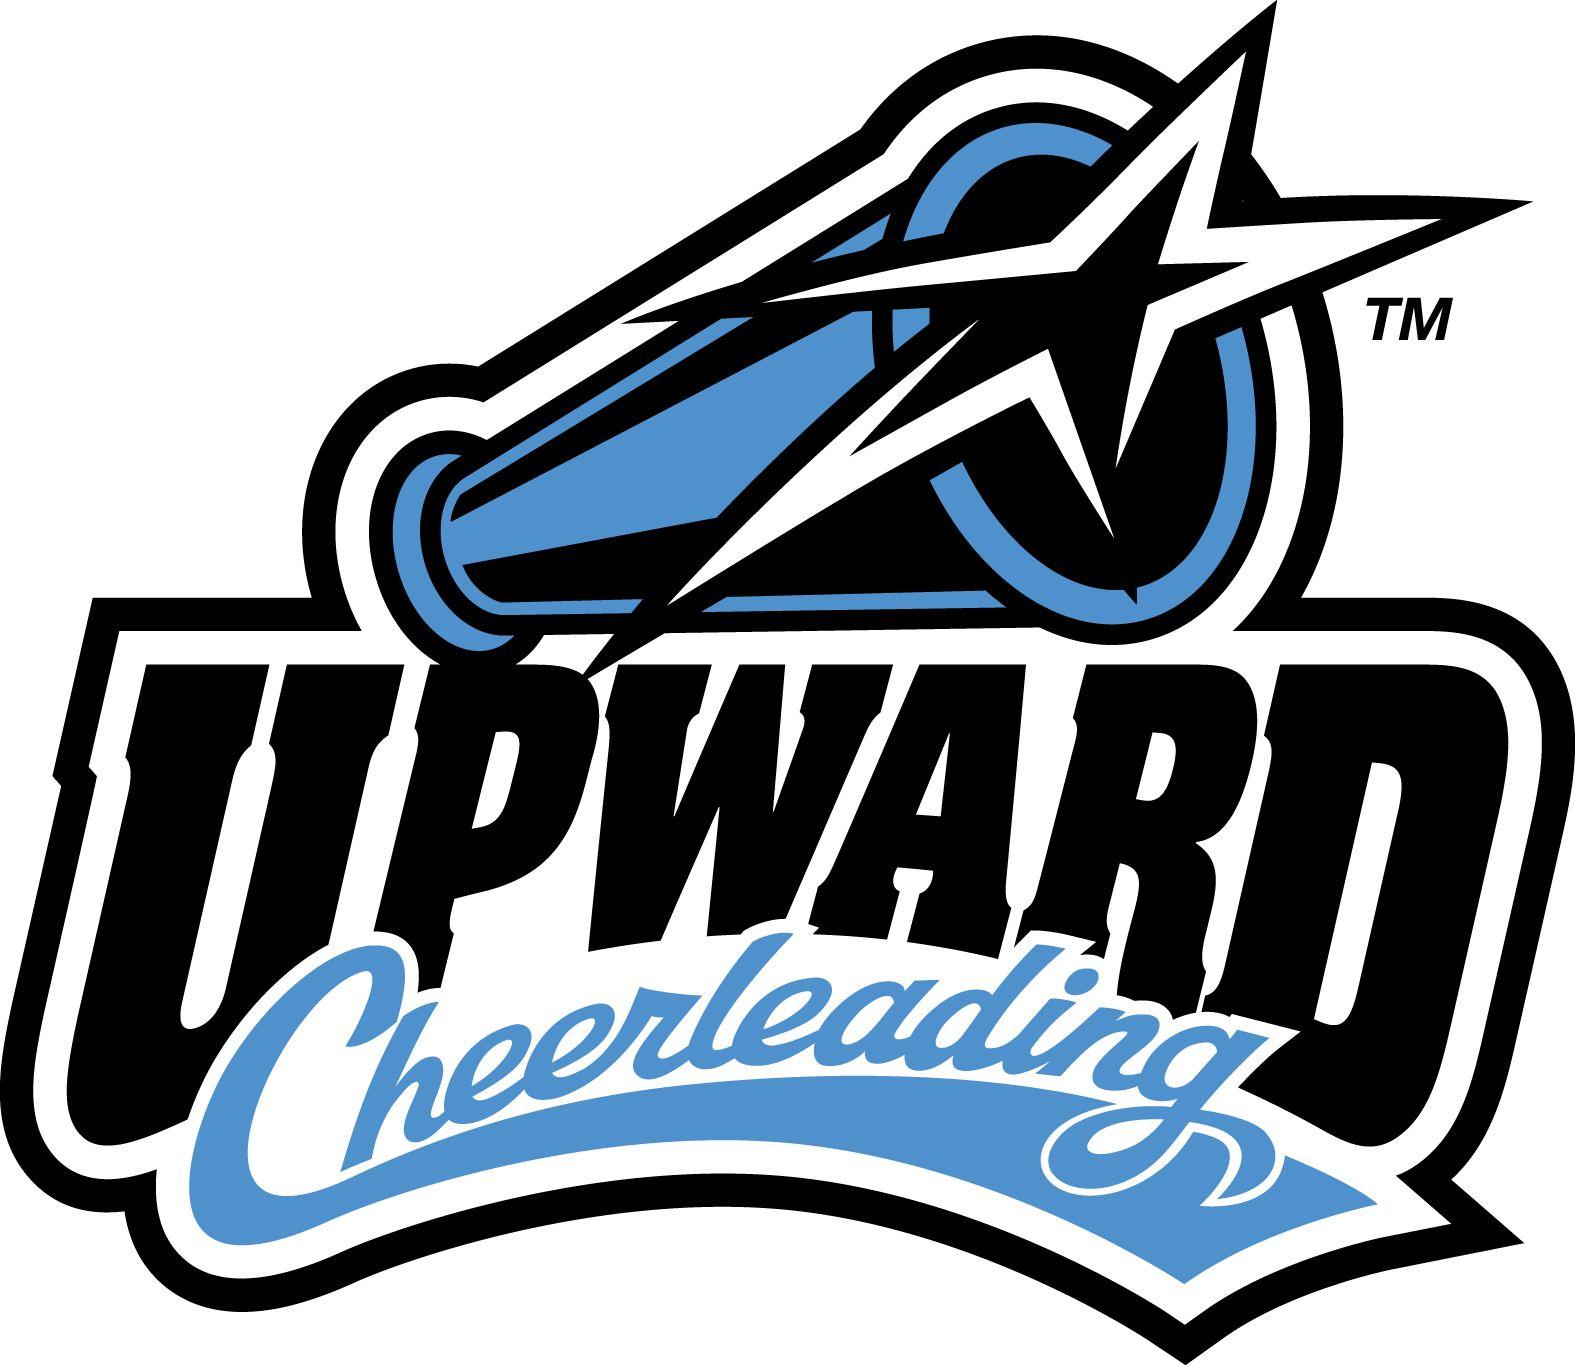 Cheerleading Logo - Upward Cheerleading. Cheer. Cheerleading, Cheer coaches, Logos